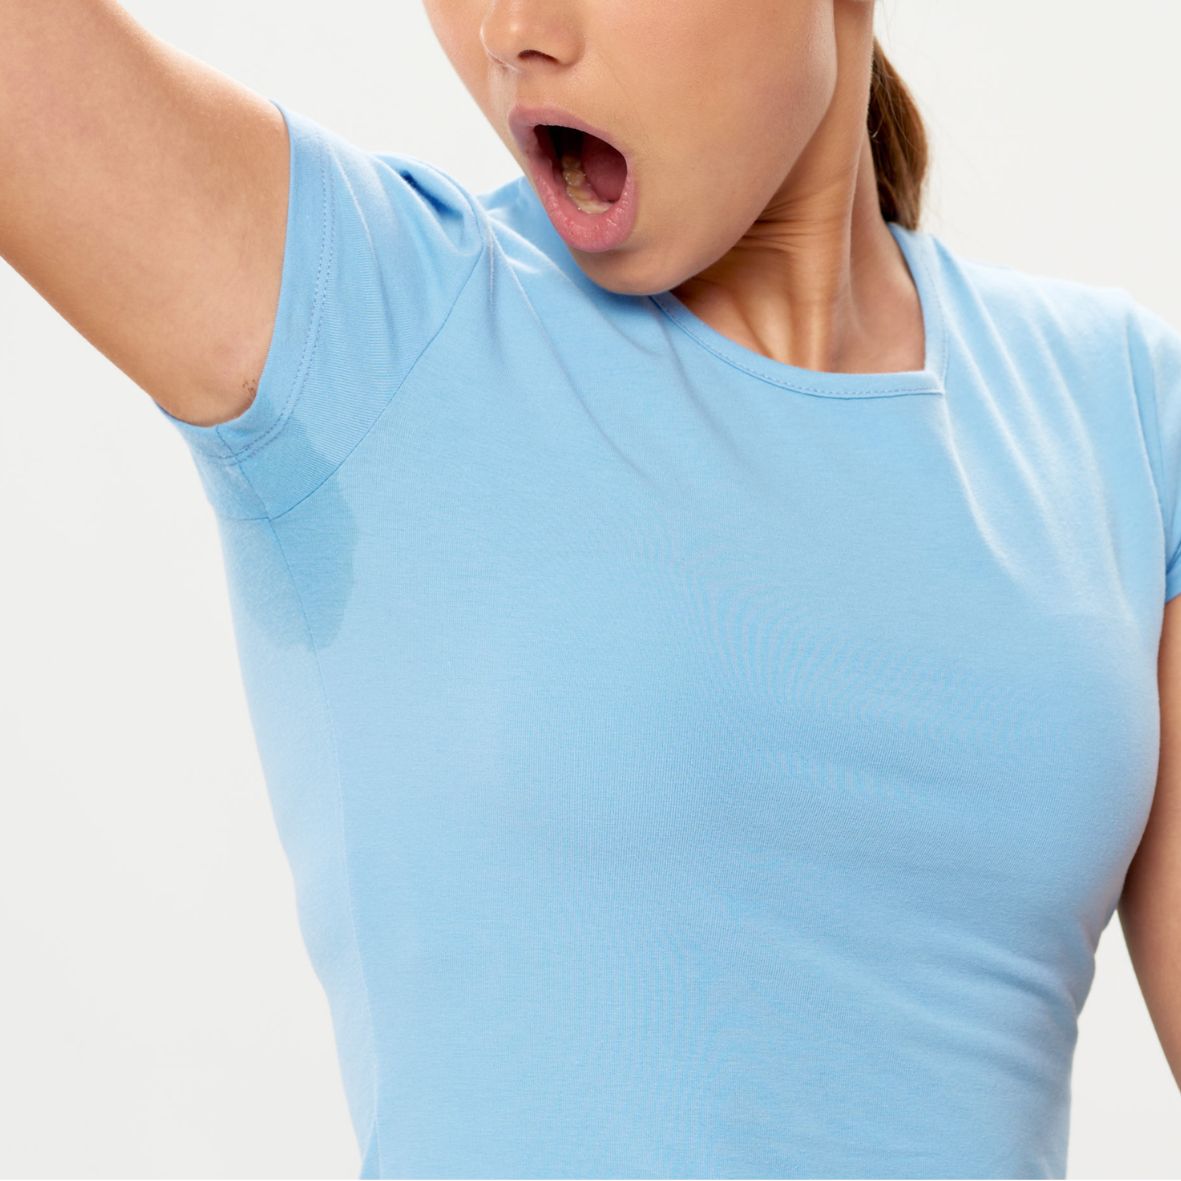 Eine Frau mit angehobenen Arm und Schweißflecken auf dem T-Shirt unter den Achseln